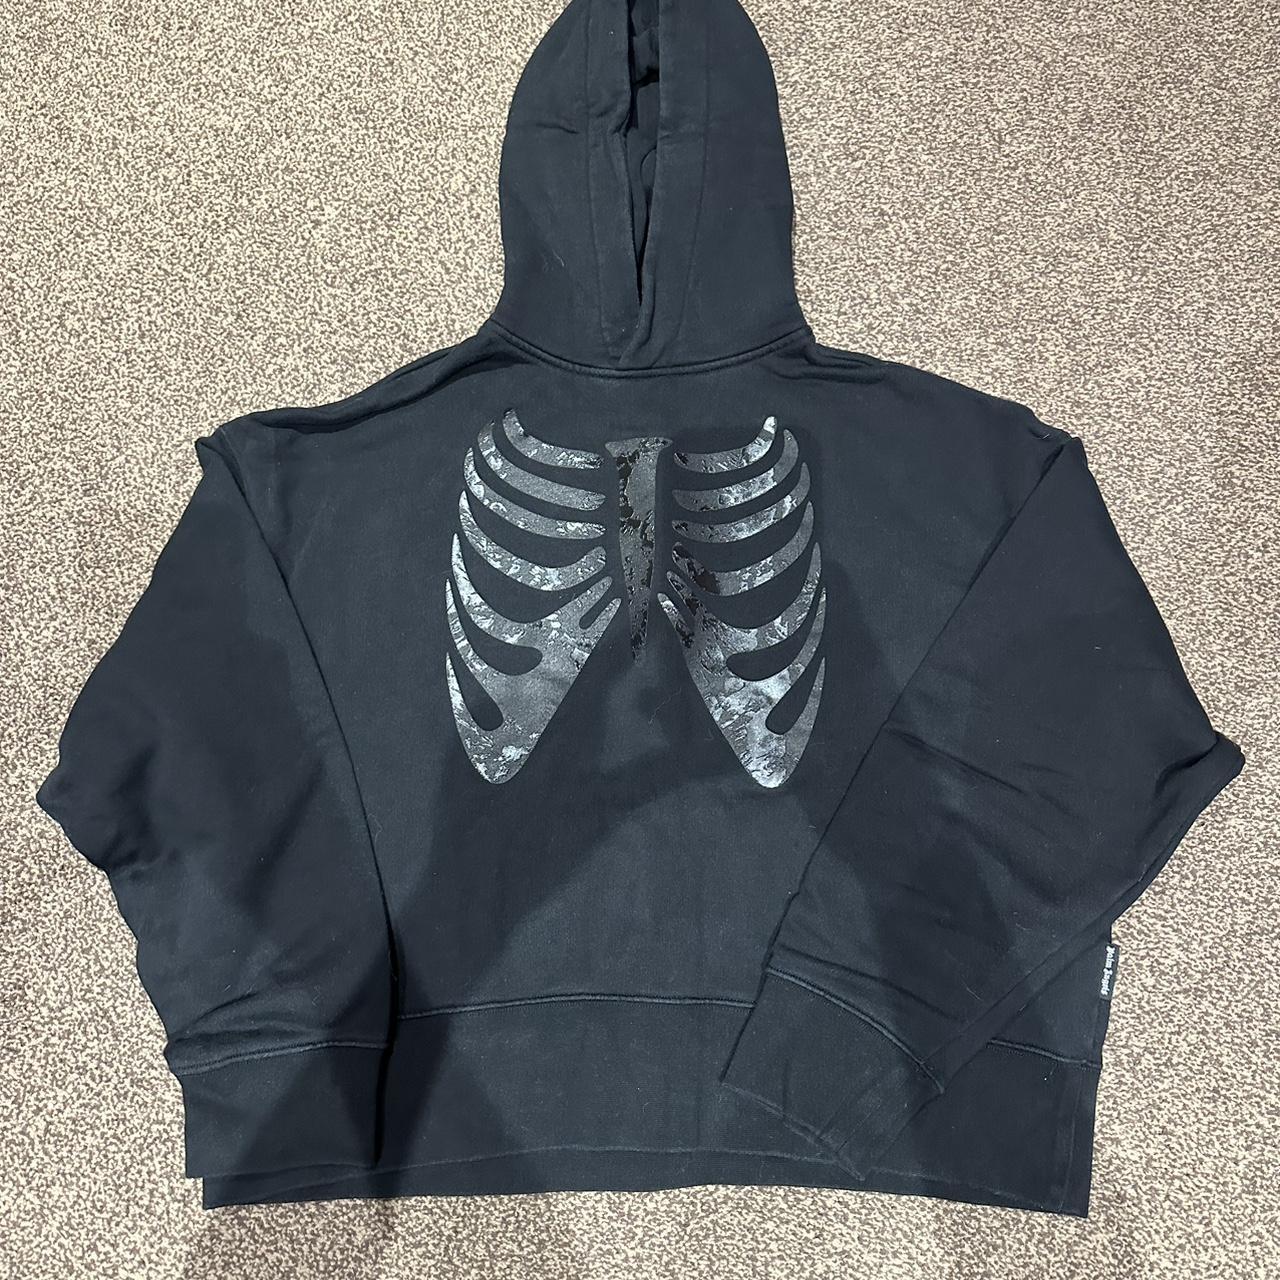 Black Palm Angels hoodie Rare Skeleton halloween... - Depop